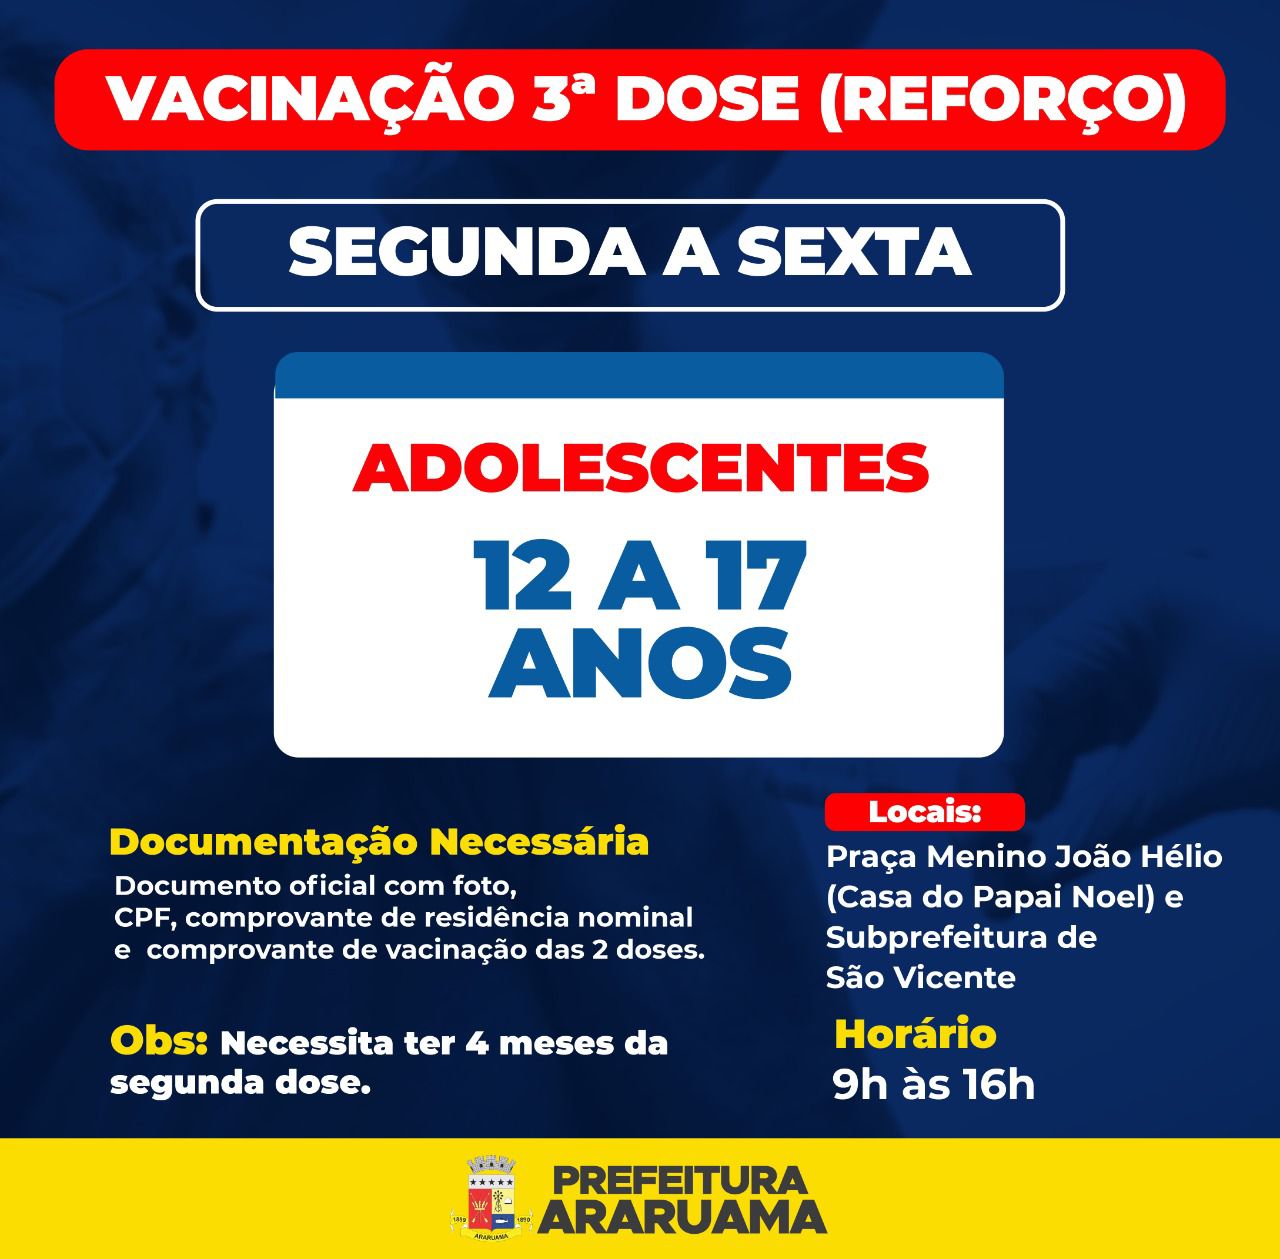 Prefeitura de Araruama vacina adolescentes de 12 a 17 anos com a terceira dose contra a COVID-19